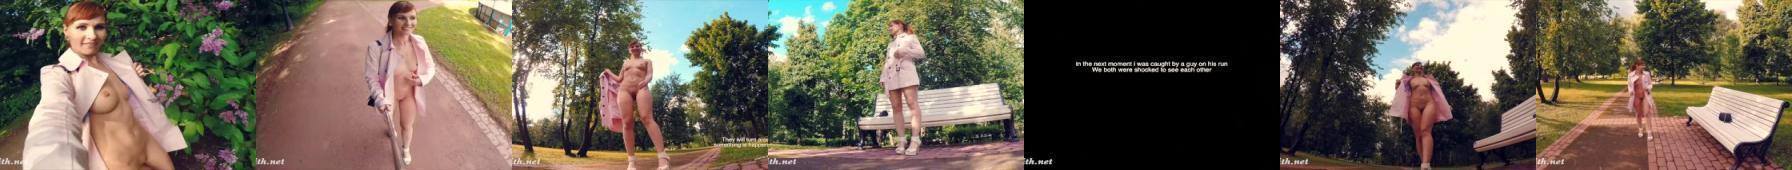 Zwykła, ruda dziewczyna chodzi nago po parku